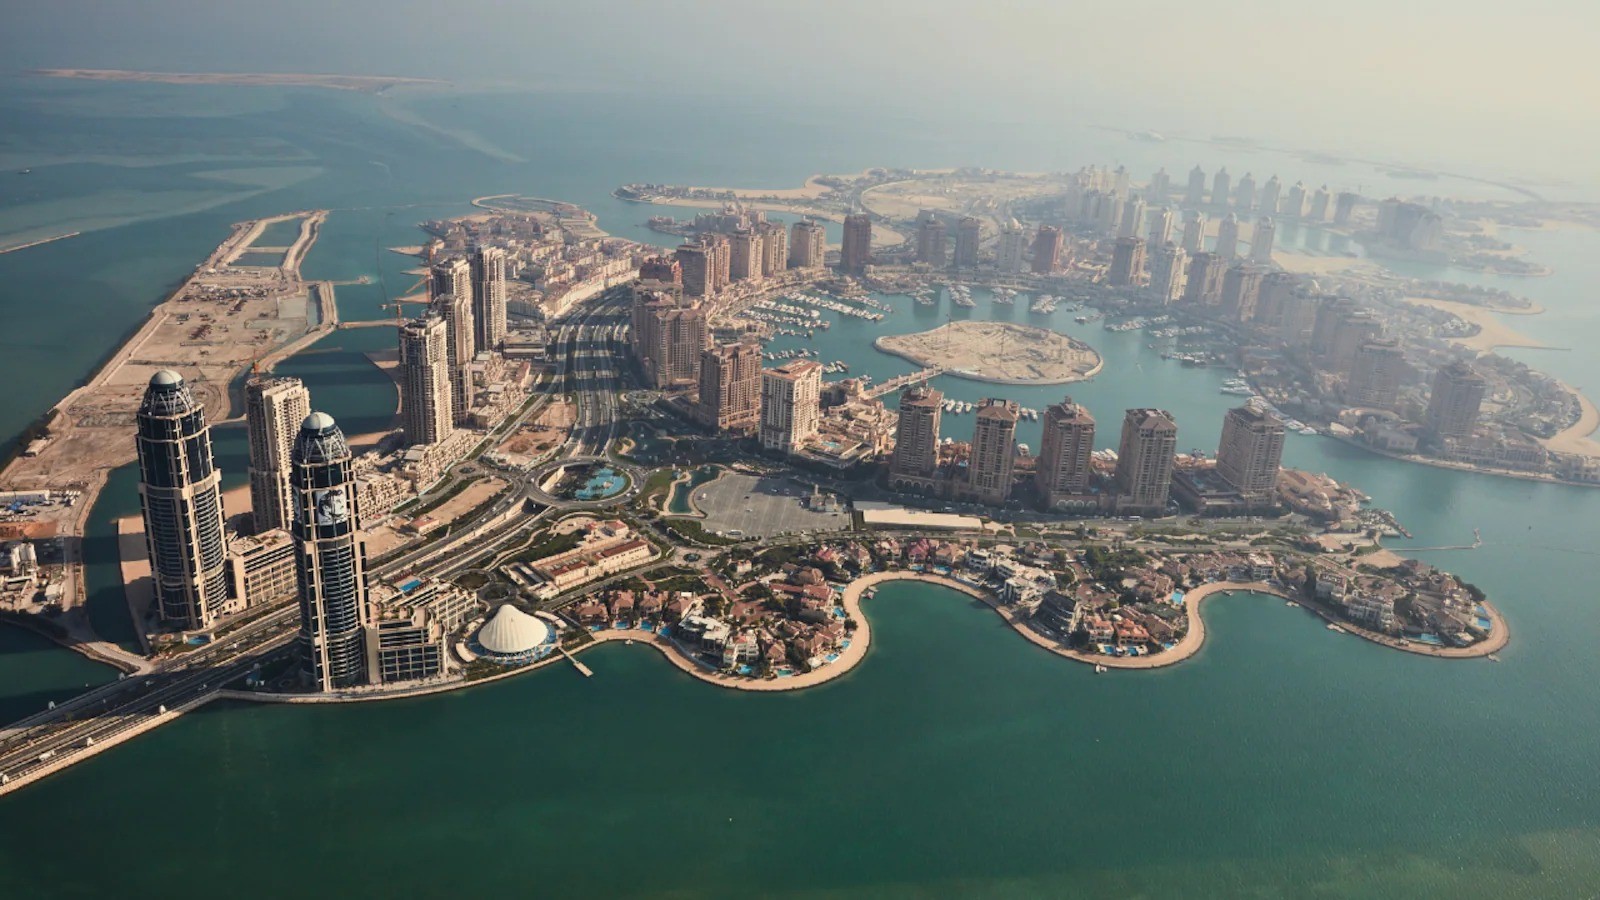 
Thị trường bất động sản Qatar tăng vọt nhờ World Cup 2022.
